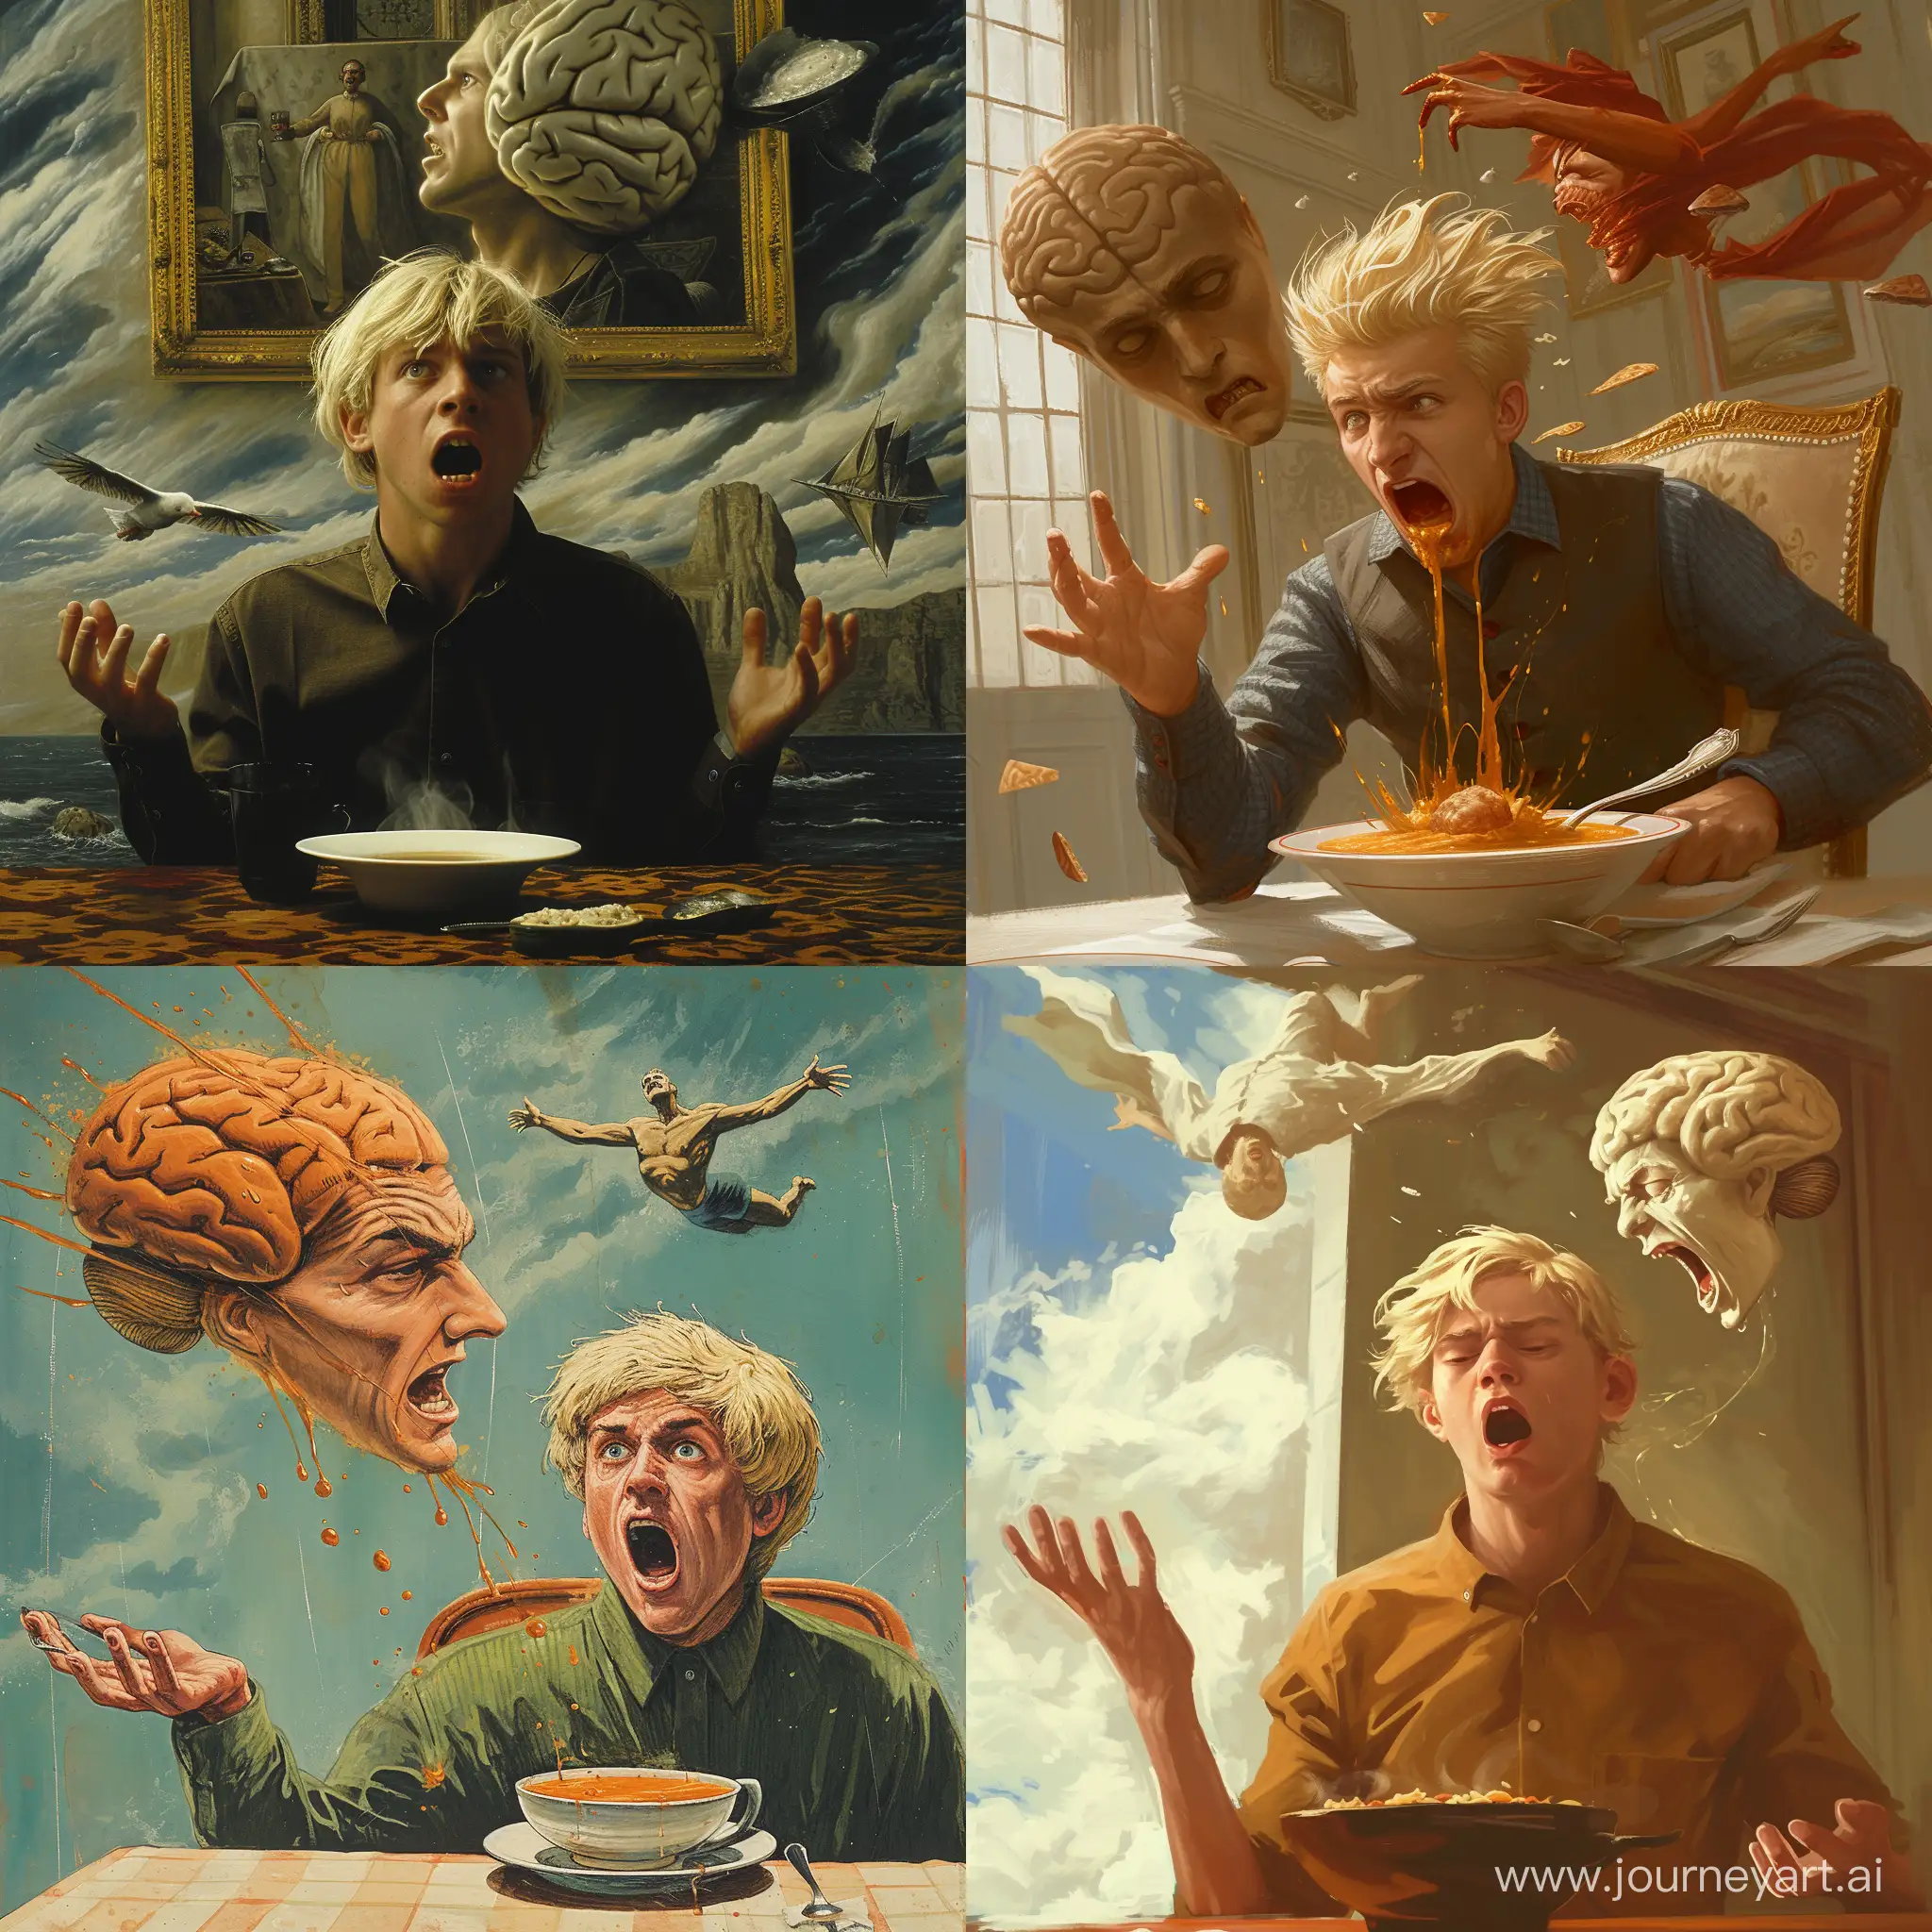 Мужчина блондин, отказывается есть суп а на него орёт летающая человеческая голова.